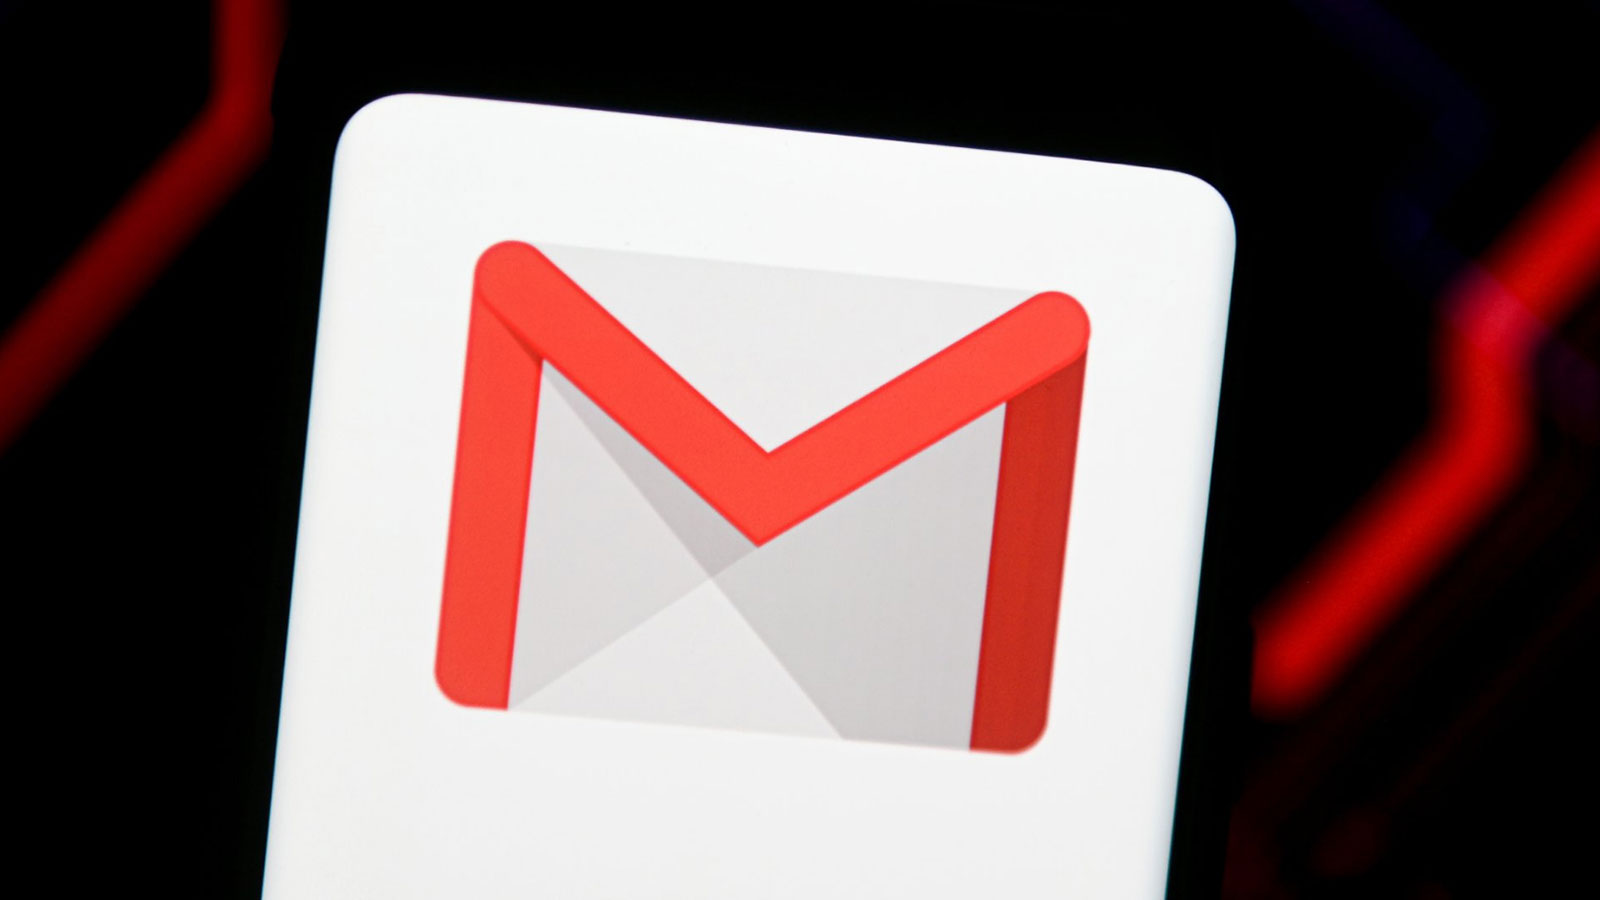 آپدیت جدید Gmail اندروید با بهینه‌سازی برای گوشی‌های تاشو عرضه شد